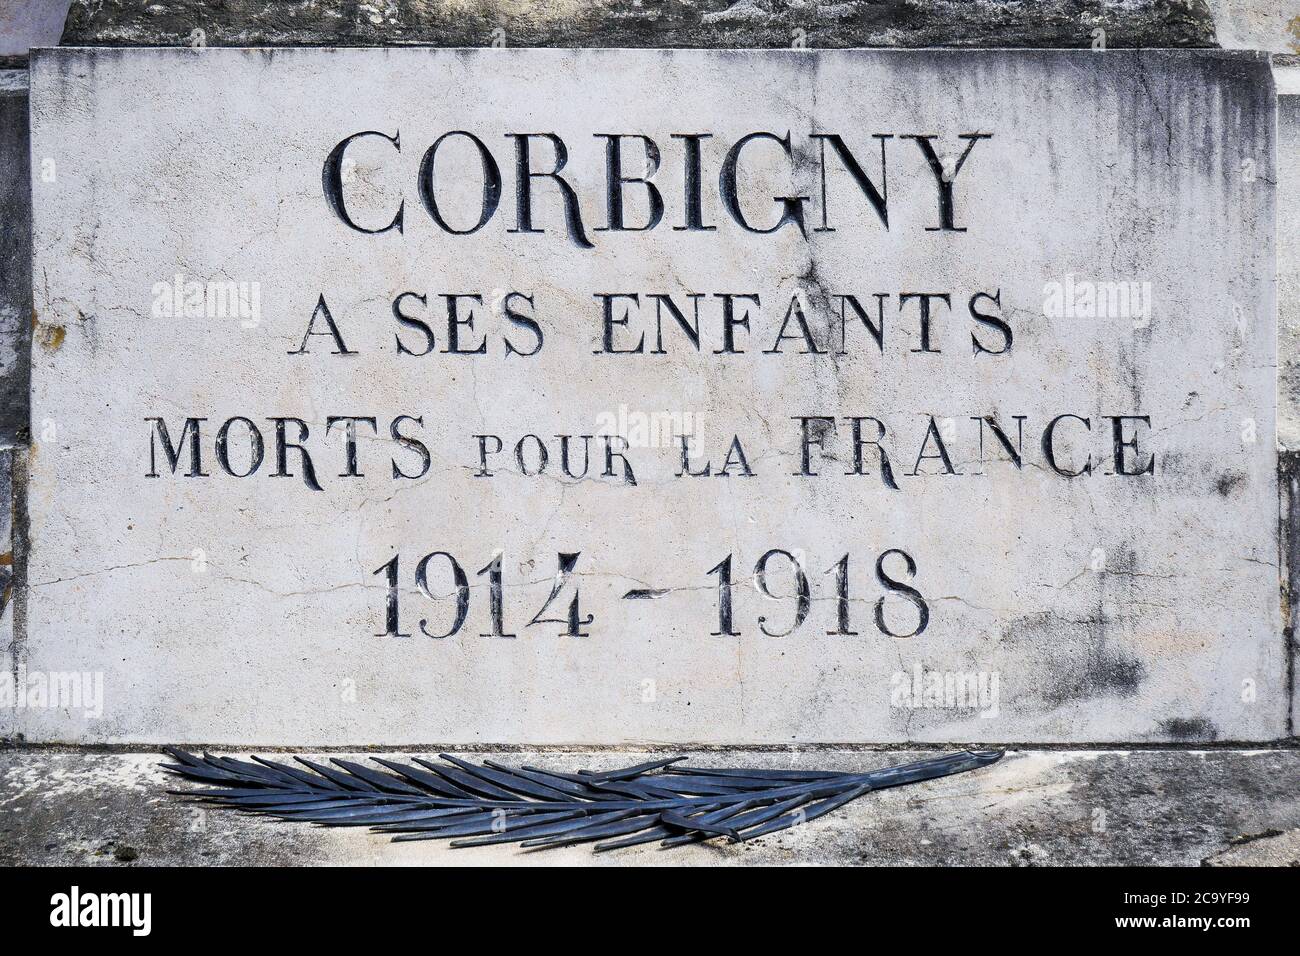 Monumento militare, Square de Verdun, Corbigny, Nièvre, Borgogna Franche-Comté Regione, Francia Foto Stock